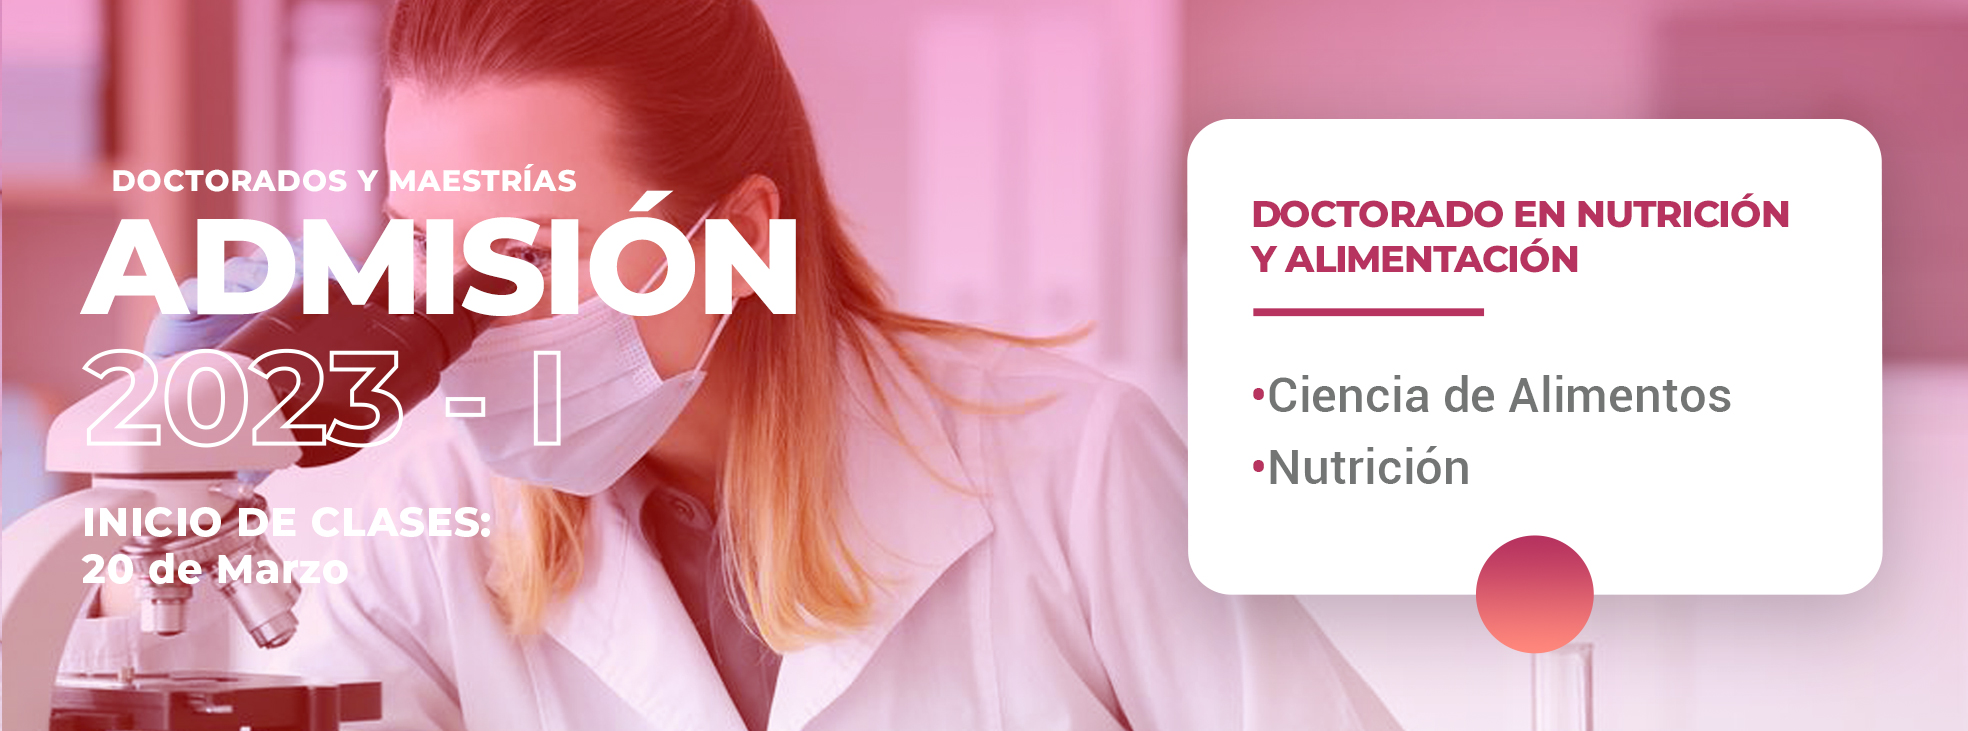 DOCTORADO-NUTRICION-Y-ALIMENTACION-WEB